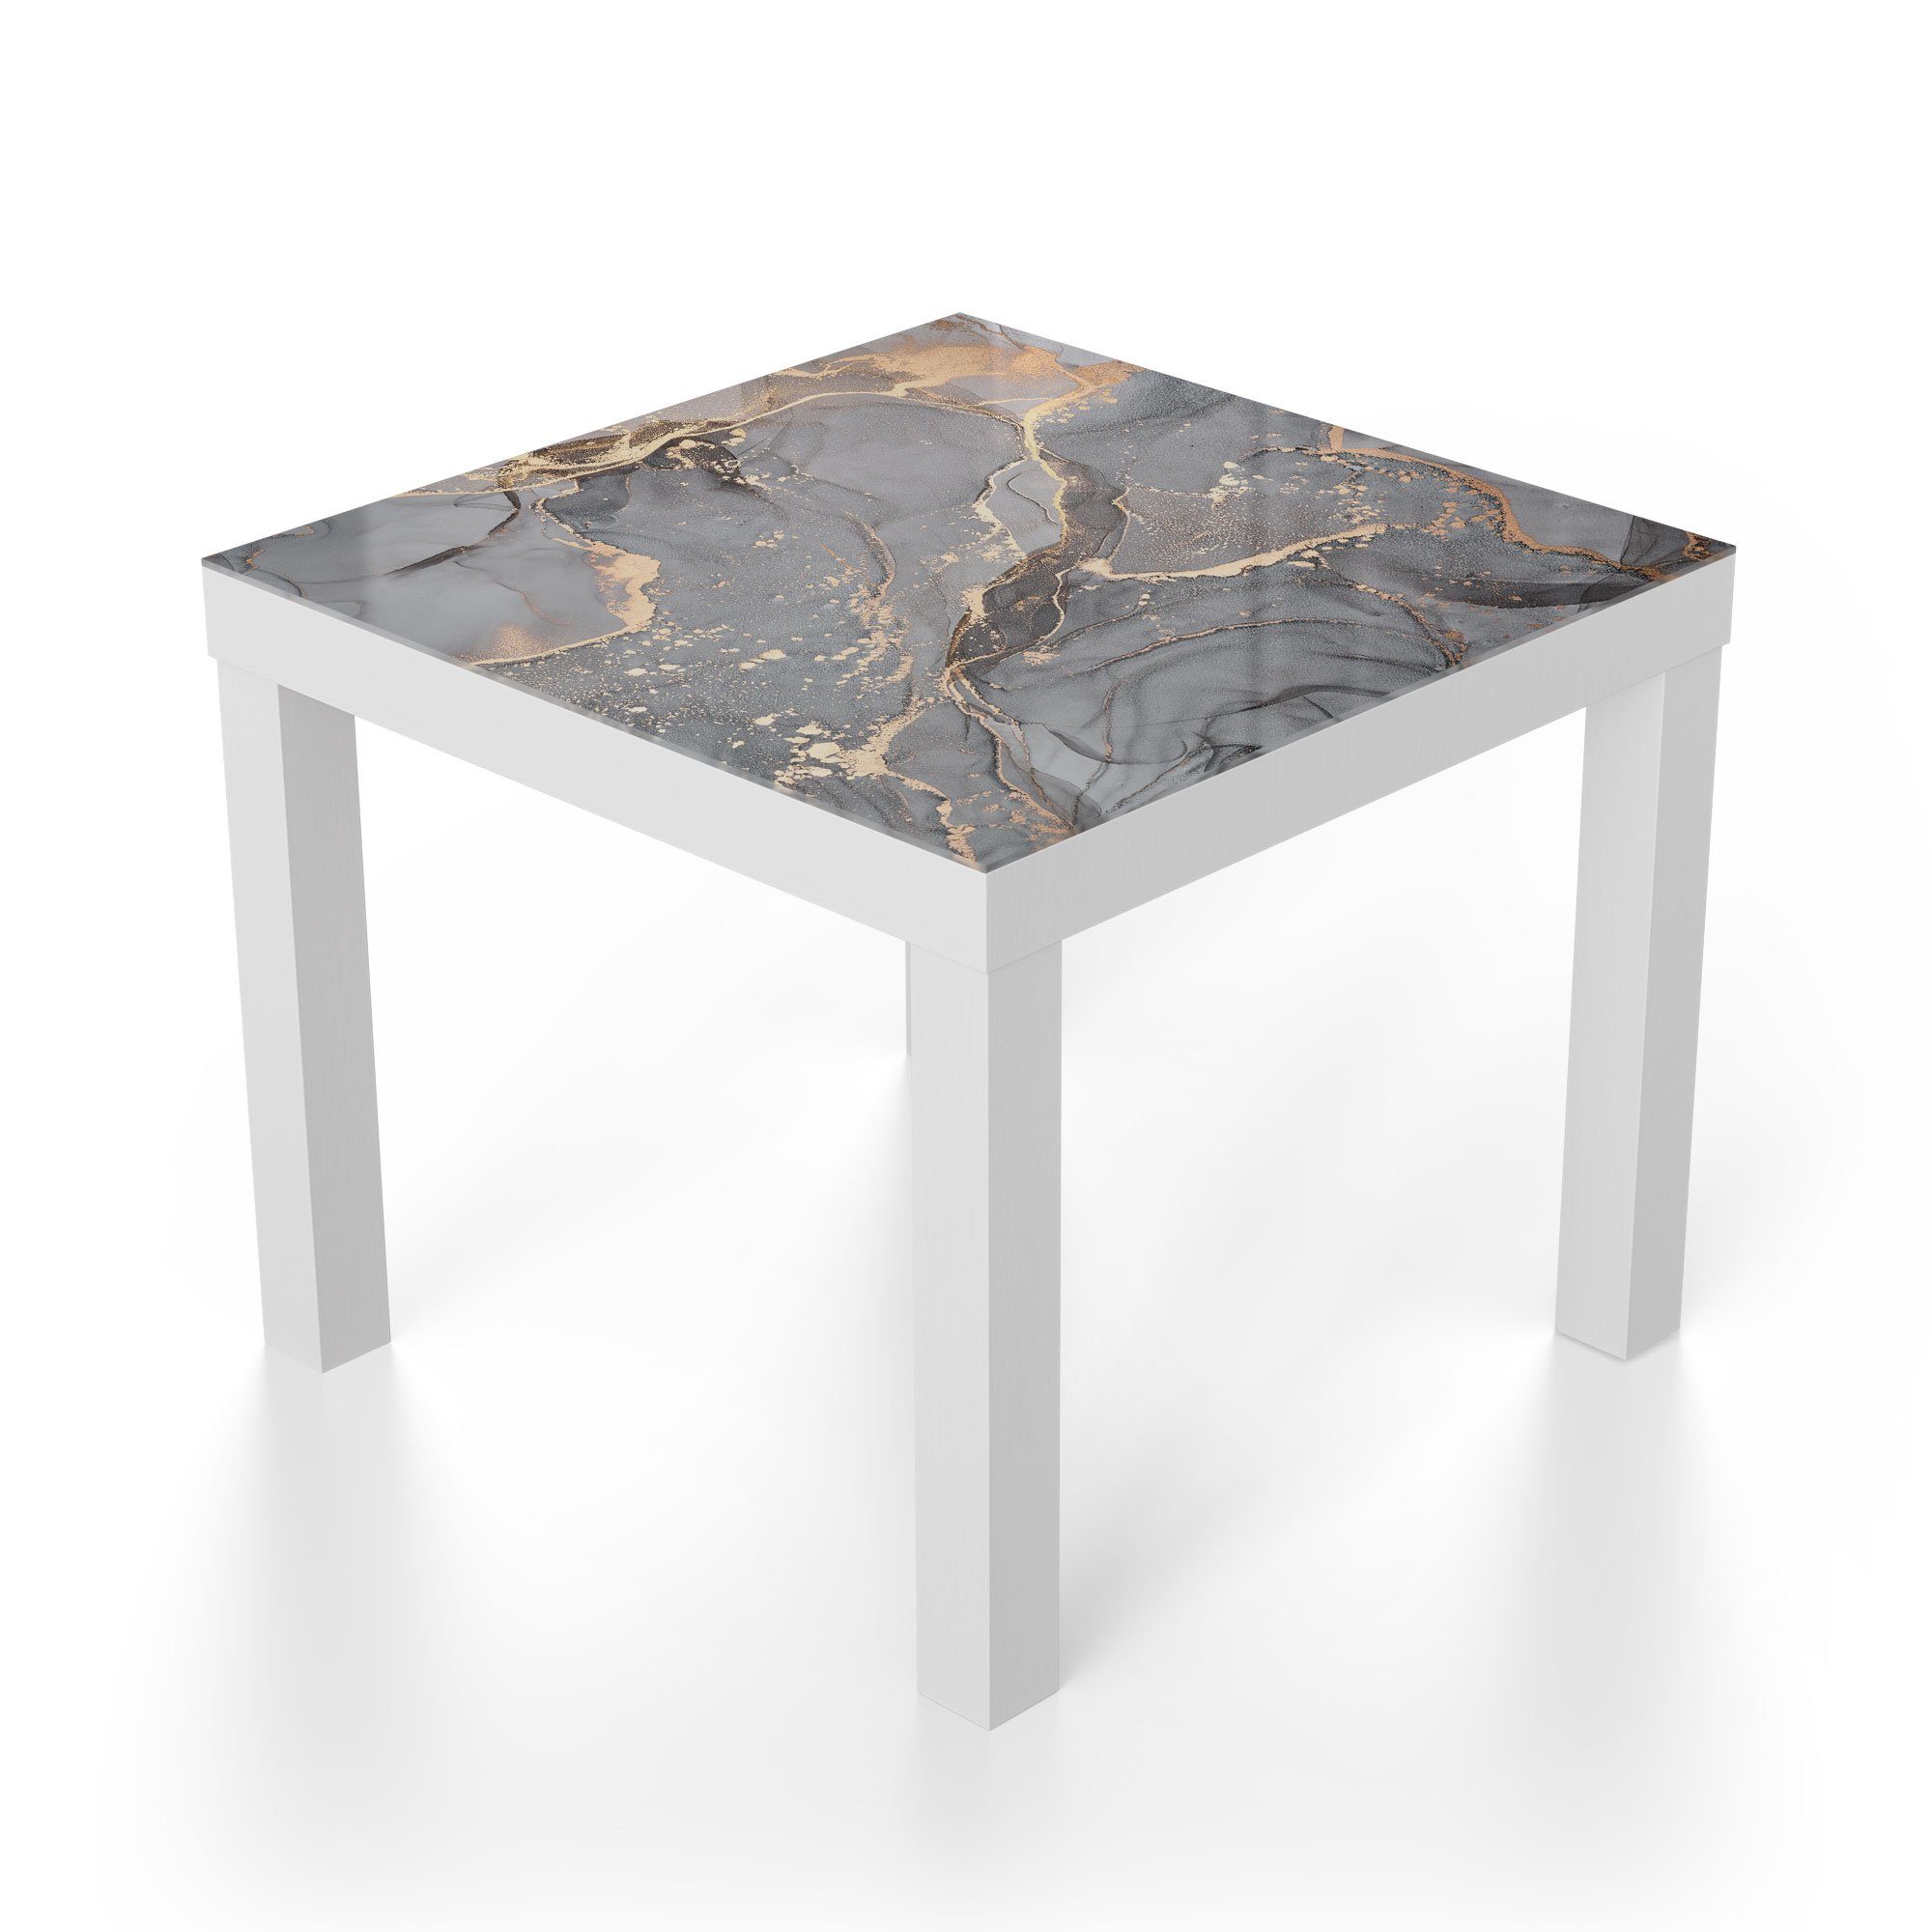 Couchtisch modern Glas Marmormuster', 'Elegantes DEQORI Glastisch Beistelltisch Weiß